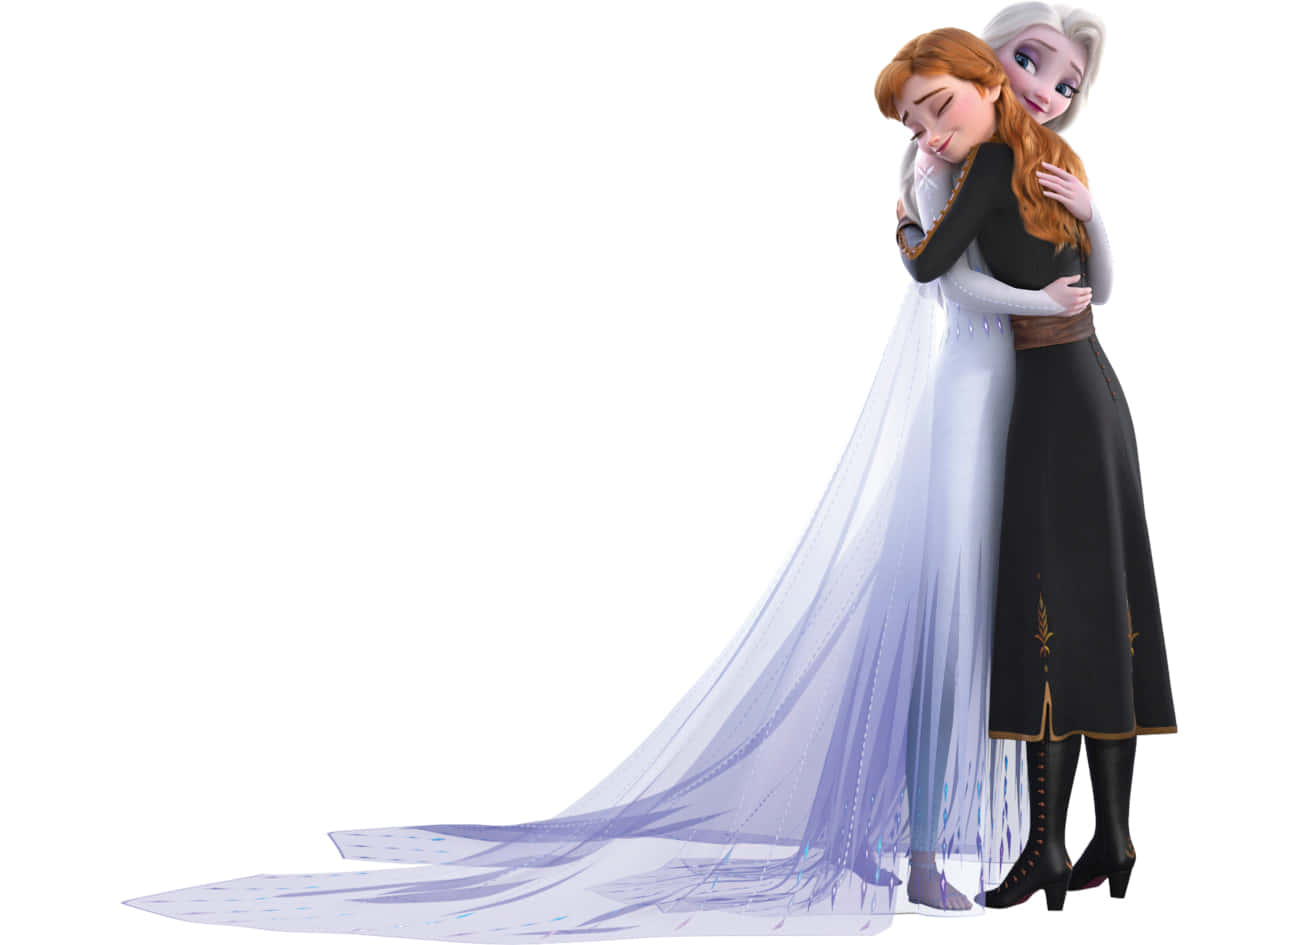 Elsaoch Anna I En Frozen Scen. Wallpaper